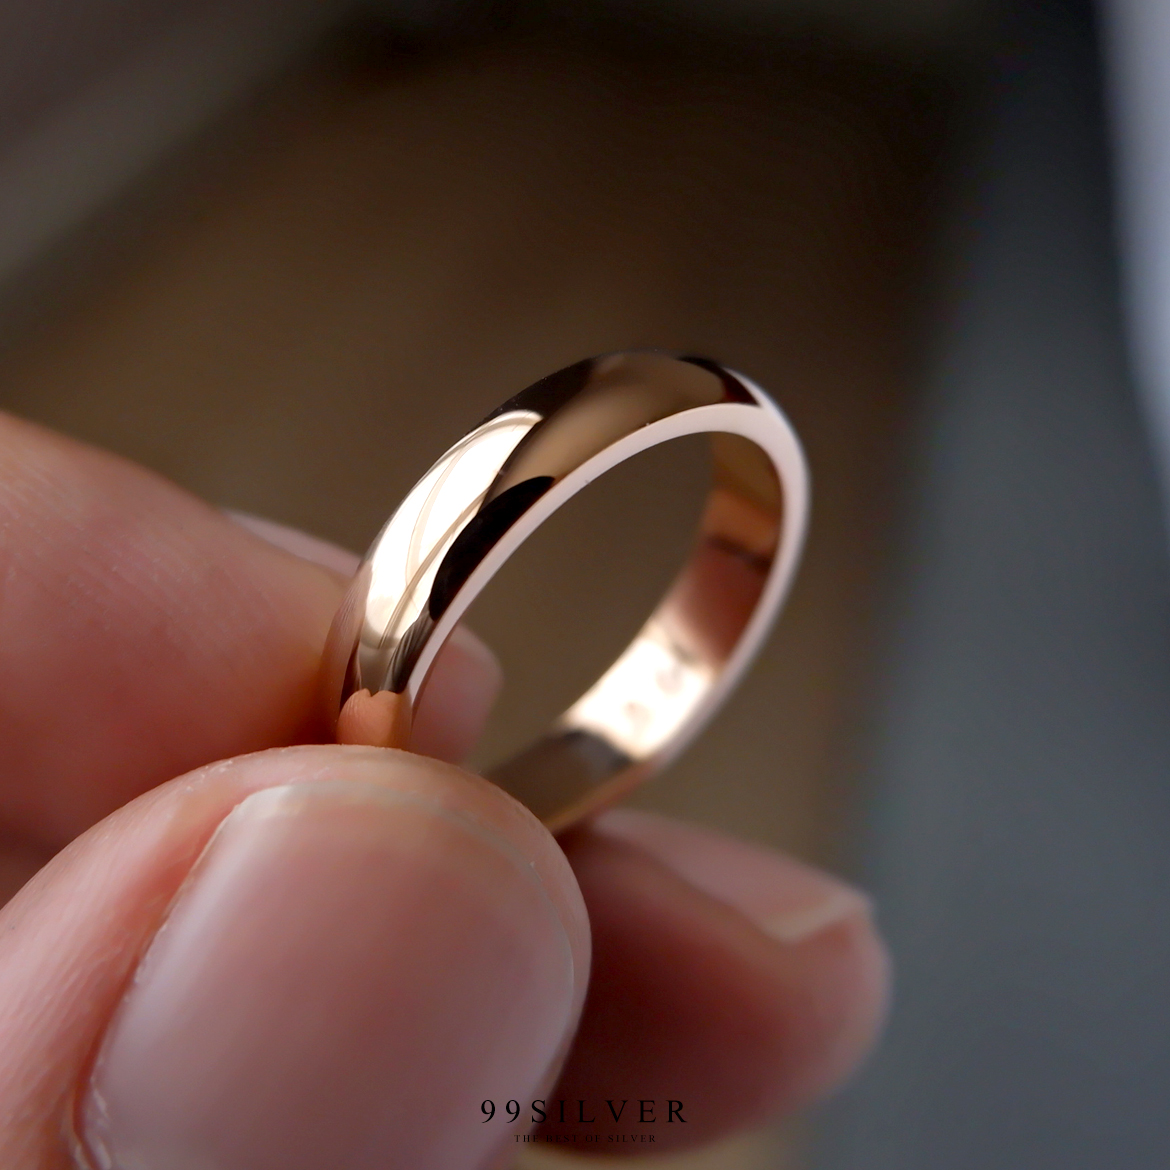 แหวนสแตนเลสแท้เคลือบพิ้งค์โกล หน้ากว้าง 4 มิลลิเมตร ผิวเงาทรงโค้ง